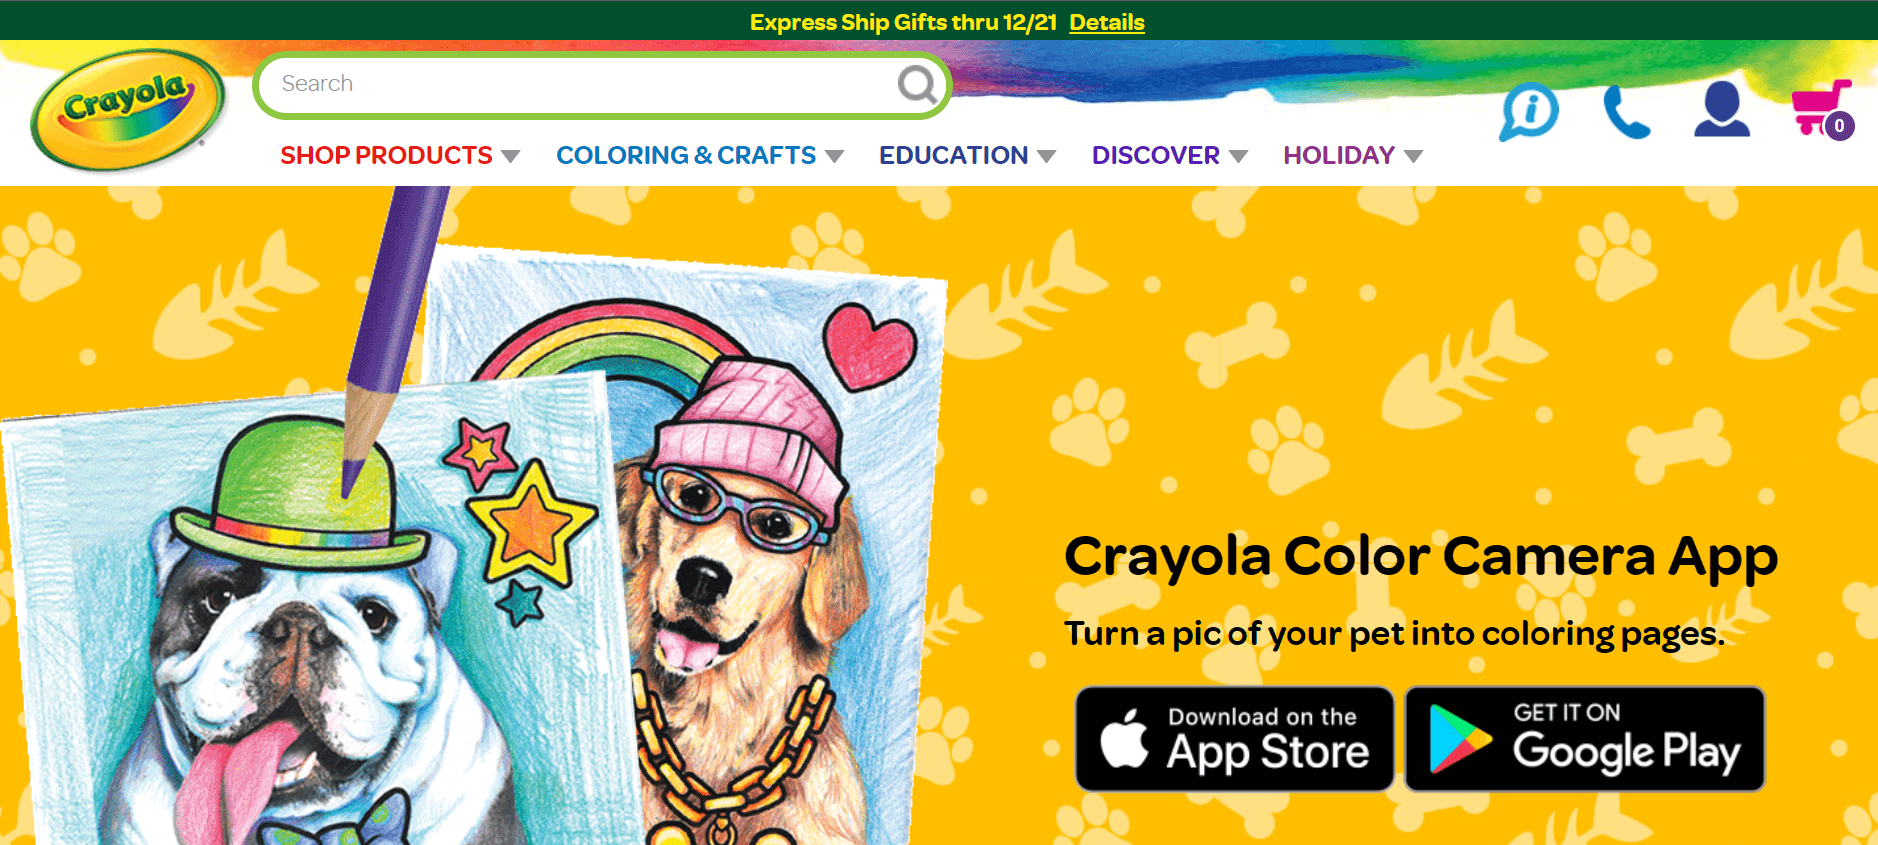 Crayola Color Camera's website